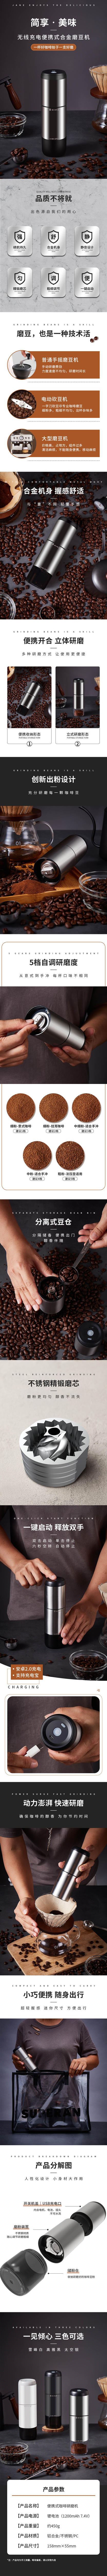 COFFEE GRINDER.jpg